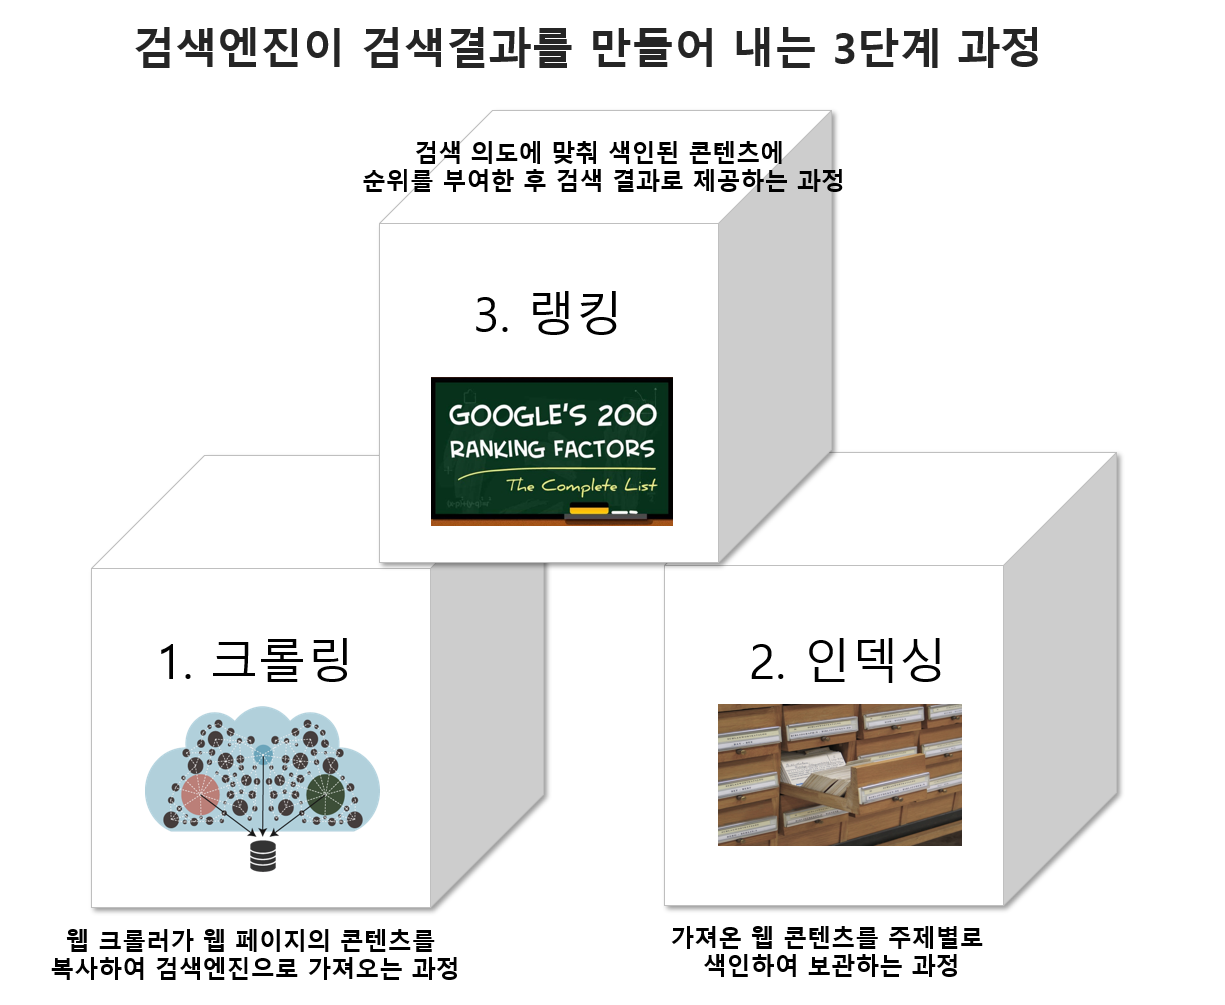 Seo(검색엔진최적화) 완벽 가이드 총정리 (2022년) - 어센트 코리아